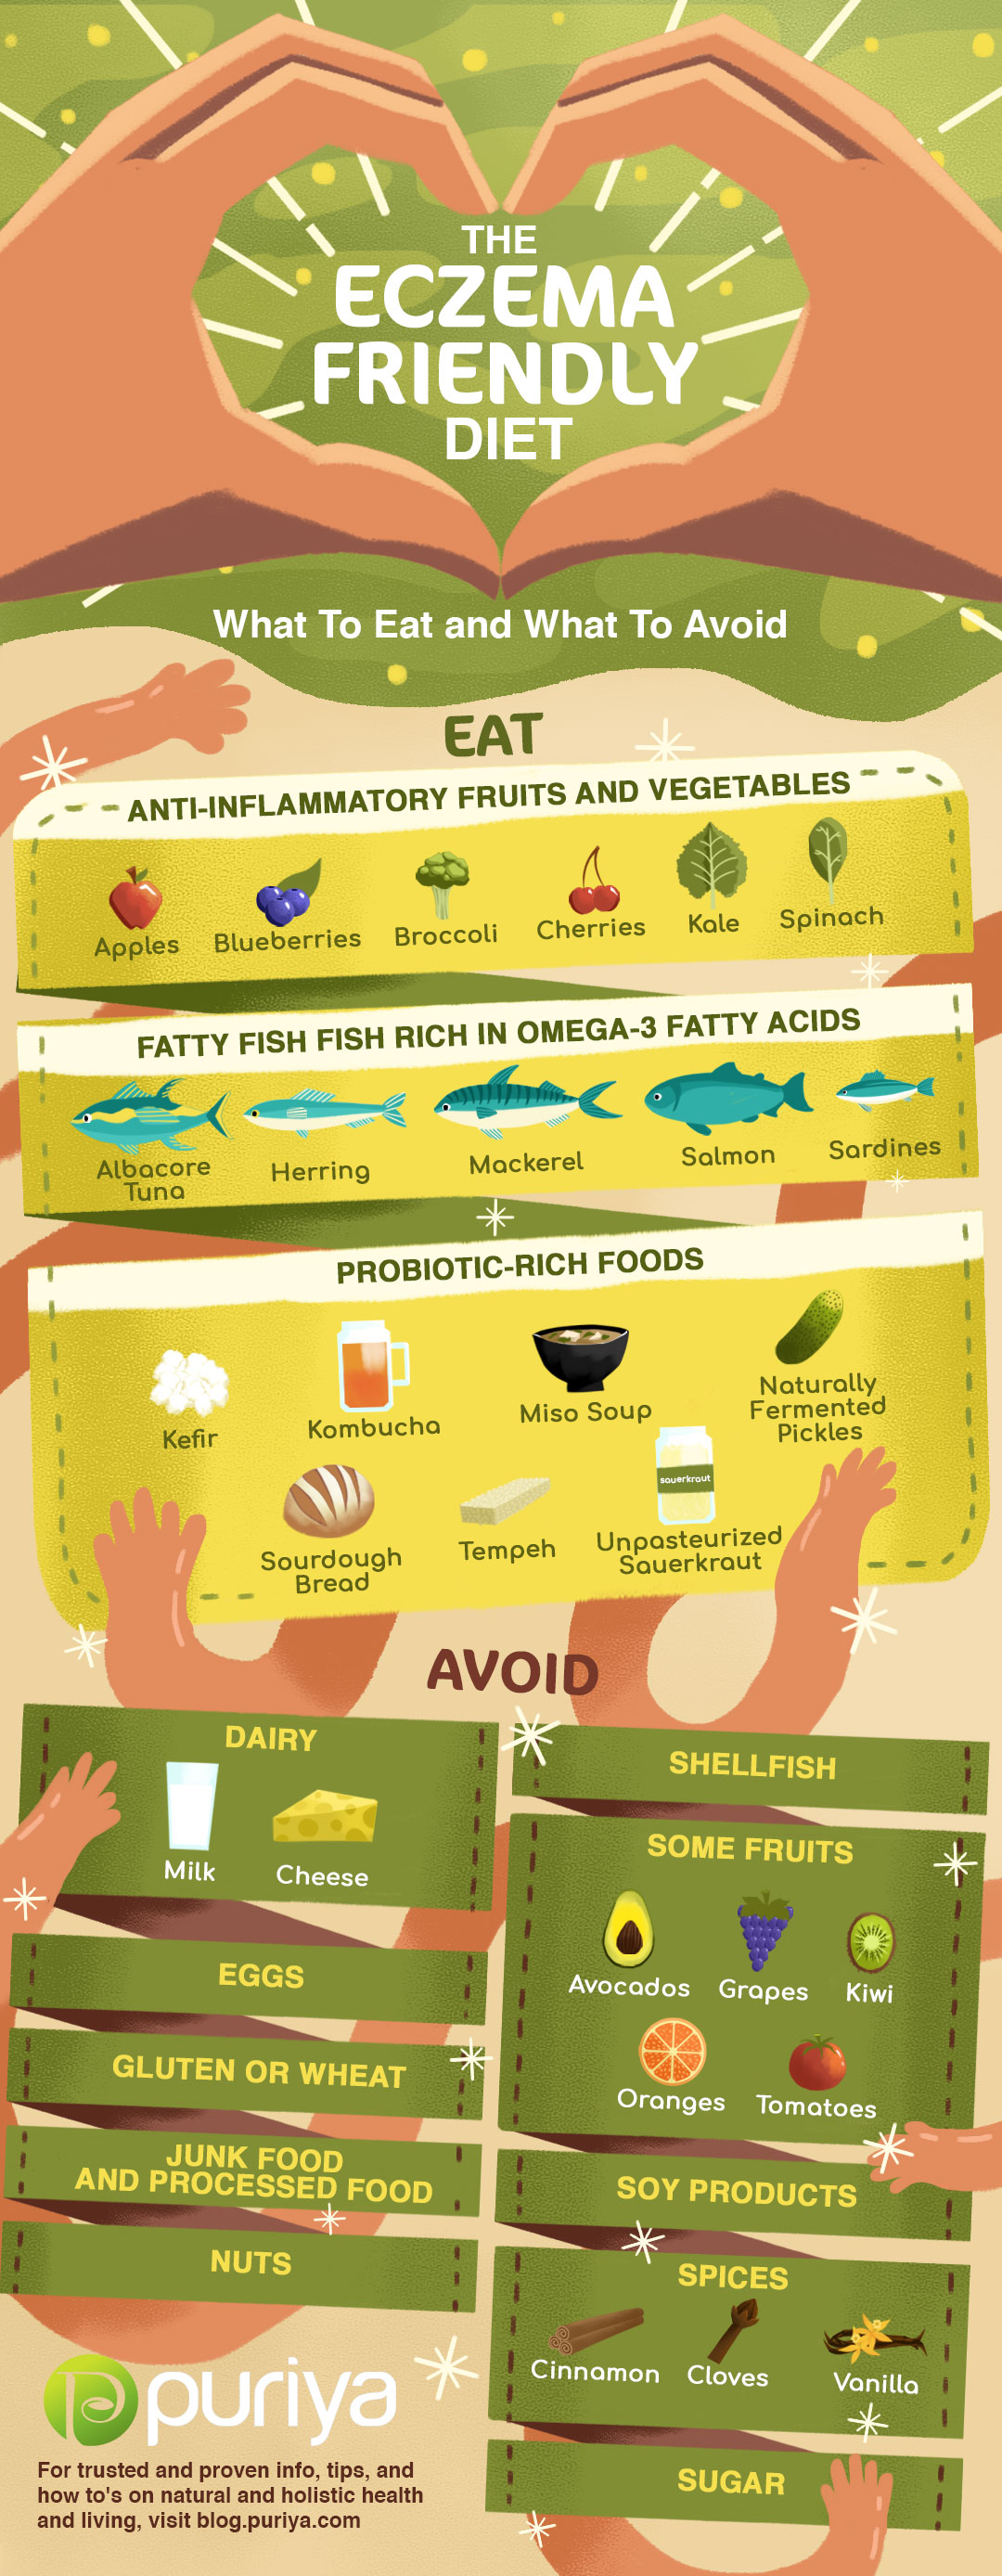 Eczema Friendly Diet Infographic | Eczema meal plan